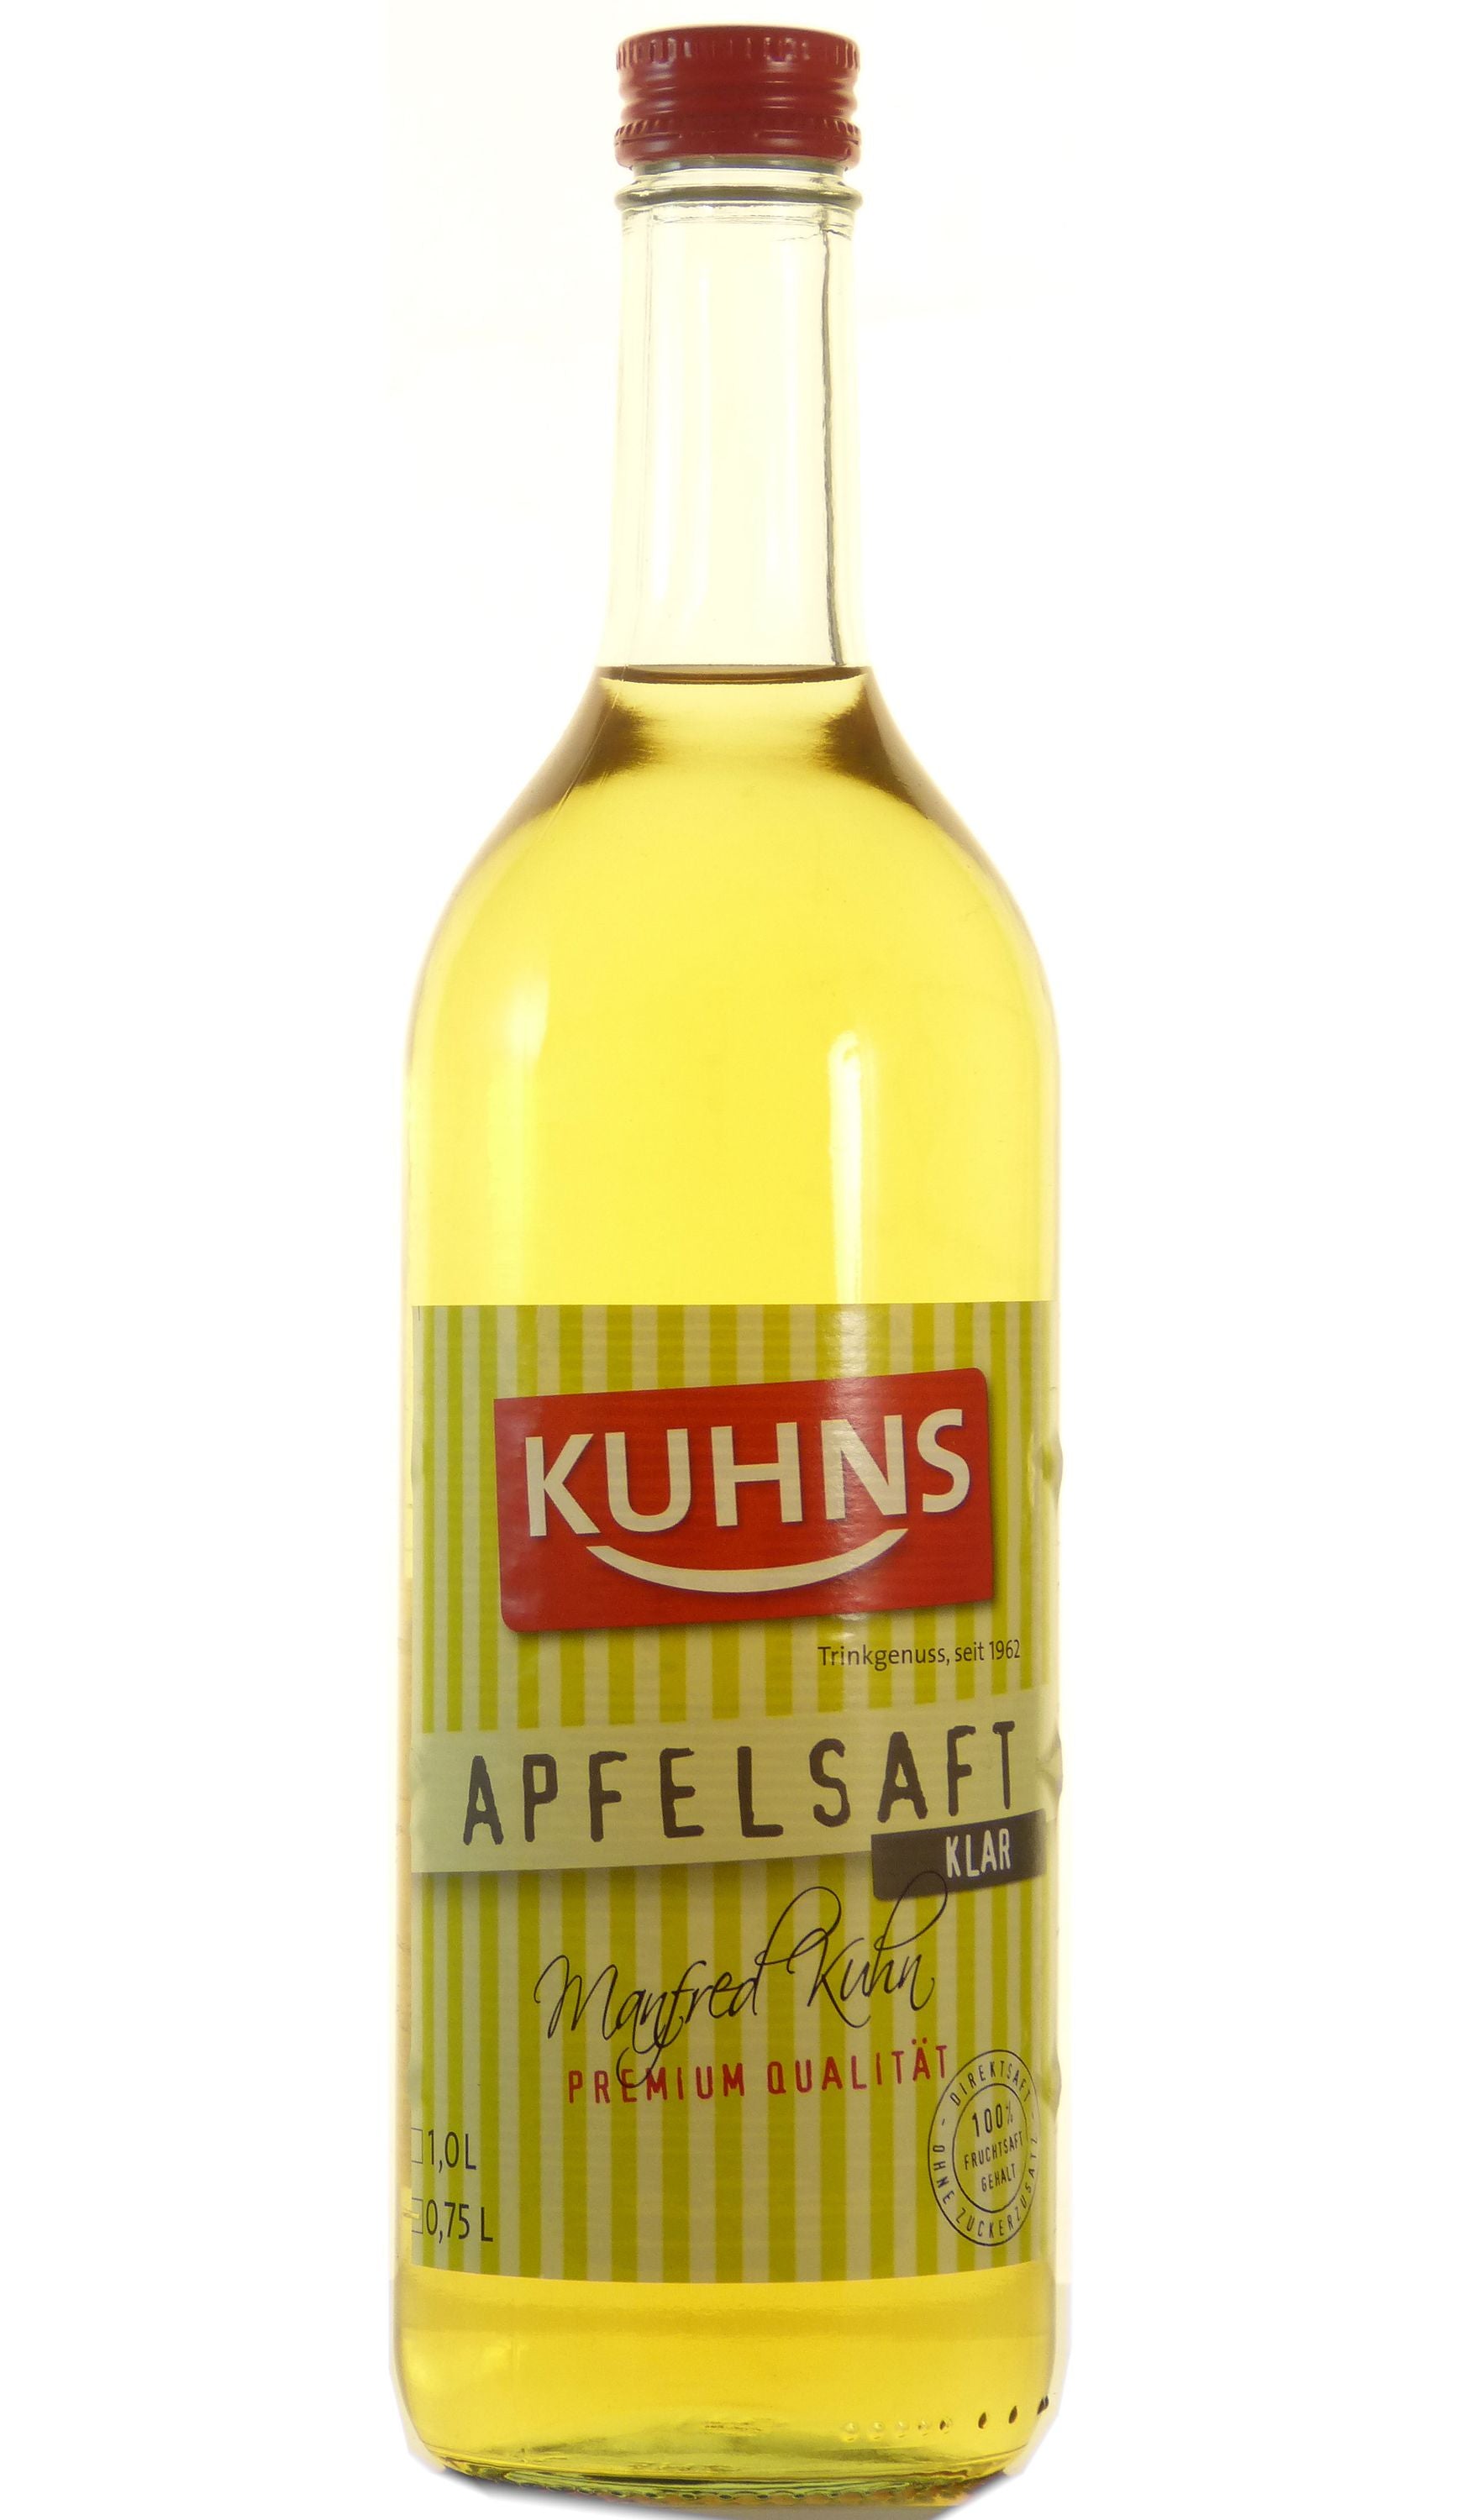 Kuhns Klarer Apfelsaft 0,75l